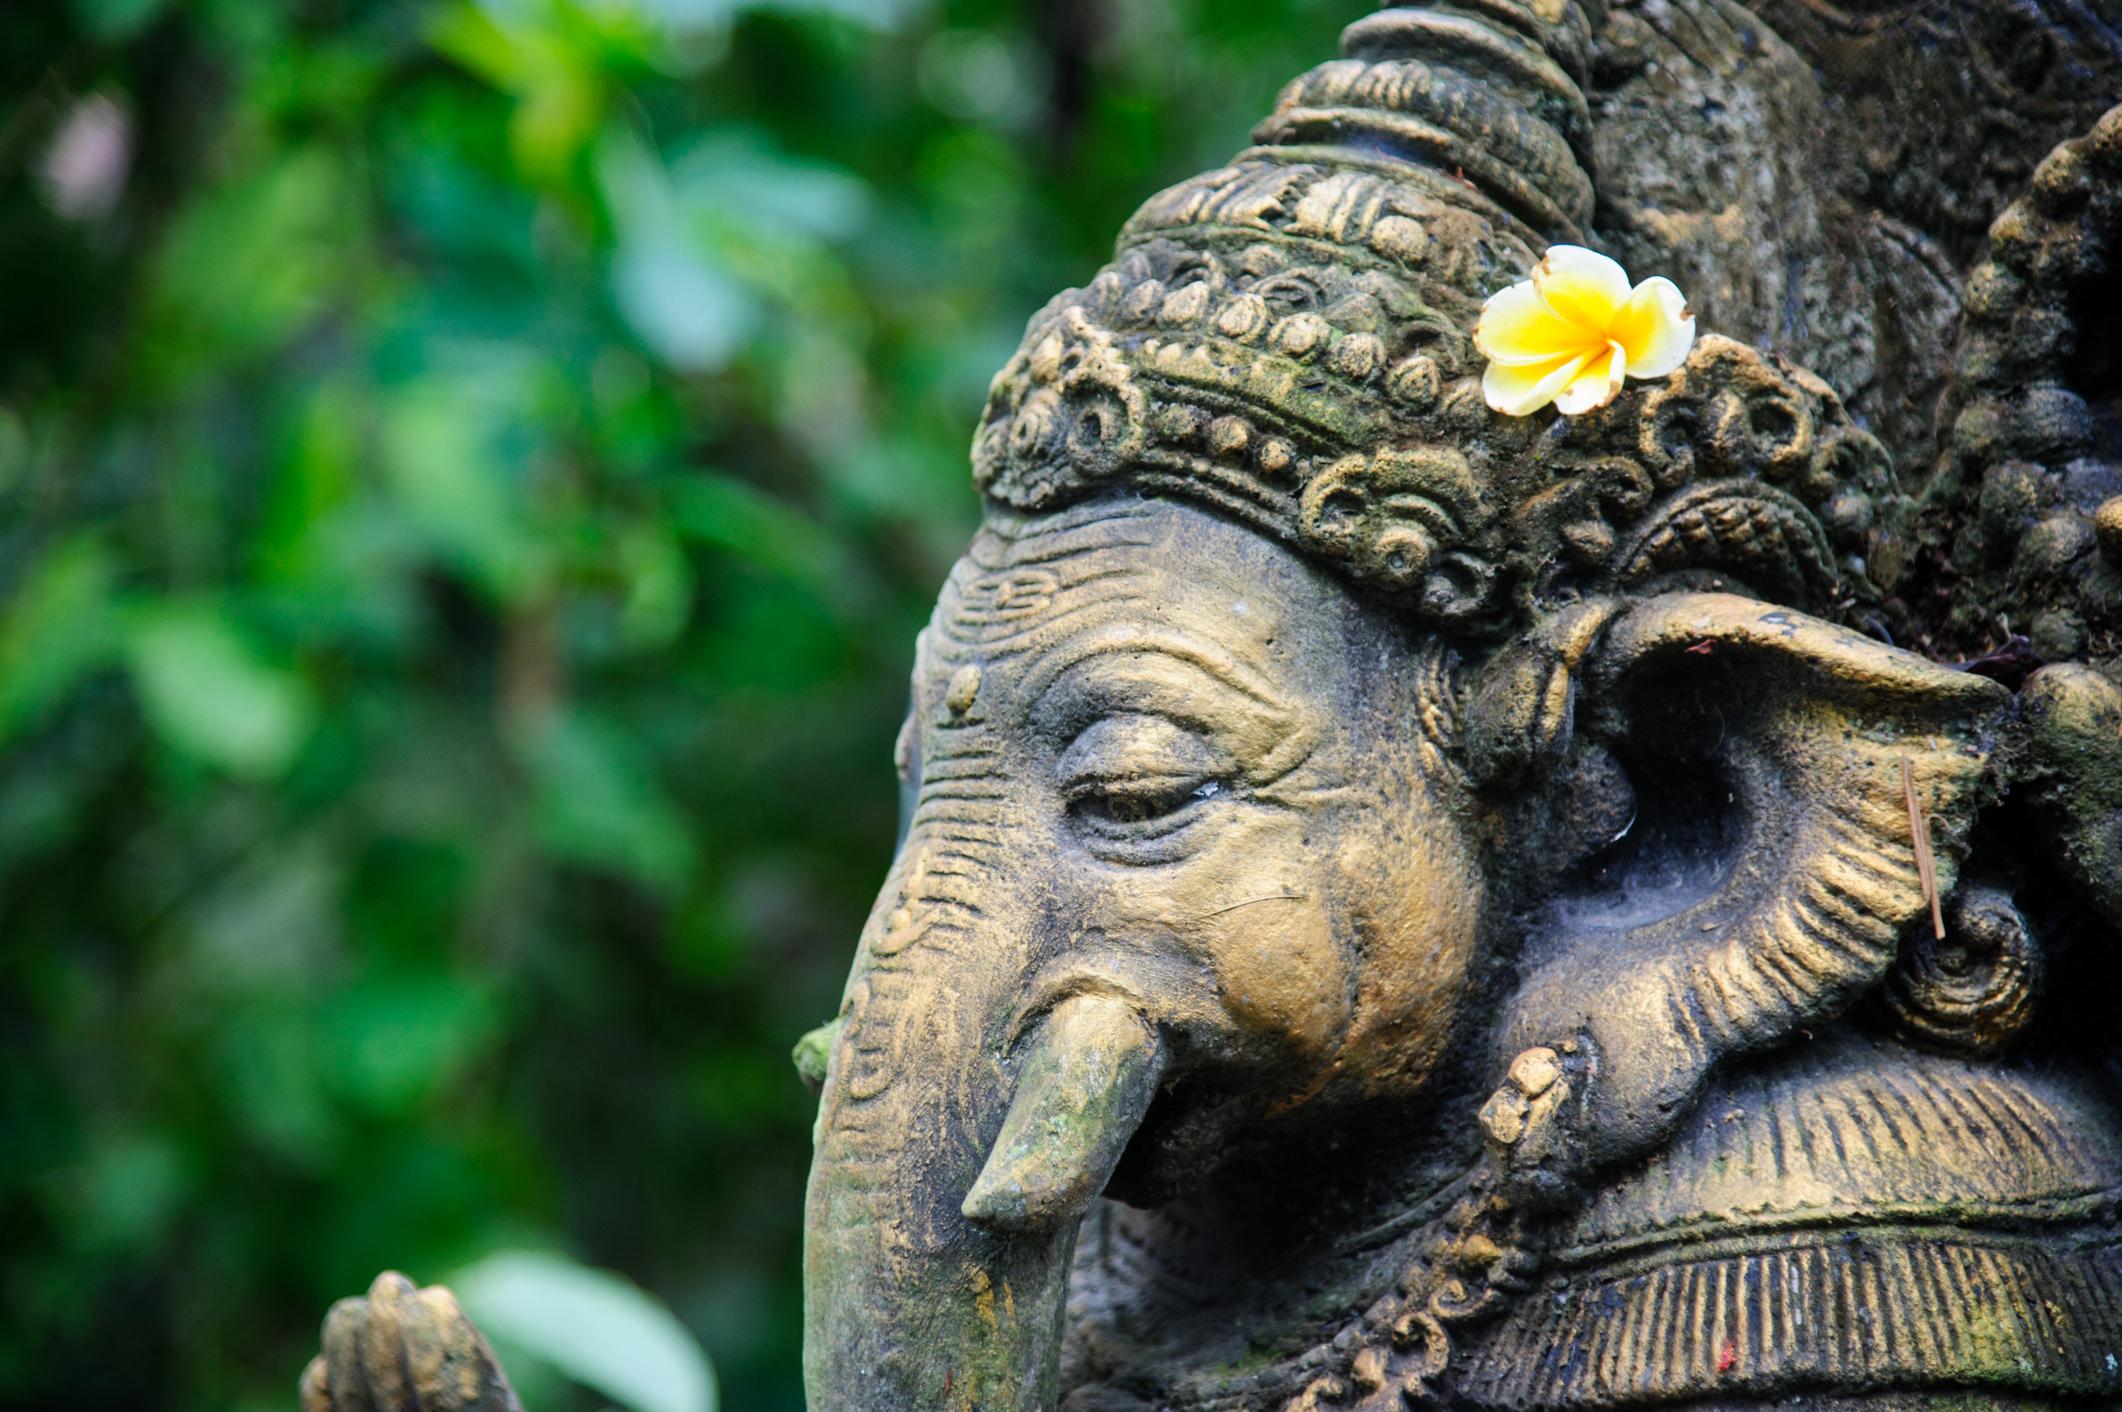 Ganesha made of stone in bali